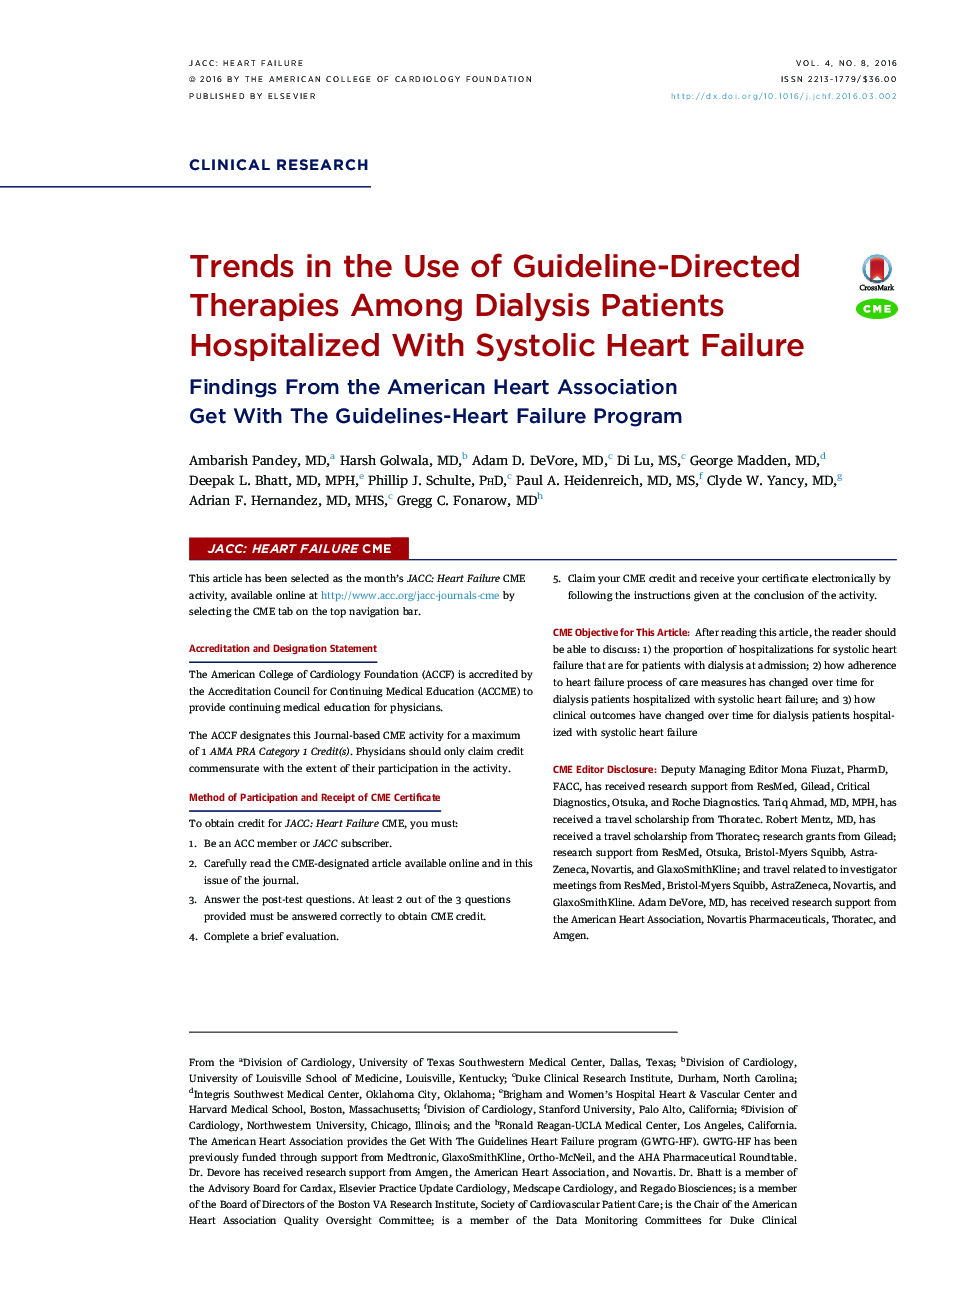 روند استفاده از مرجع درمانی در میان بیماران دیالیز بستری شده با نارسایی قلبی سیستولیک: یافتههای انجمن قلبی آمریکا با استفاده از دستورالعملهای قلبی - قلبی 